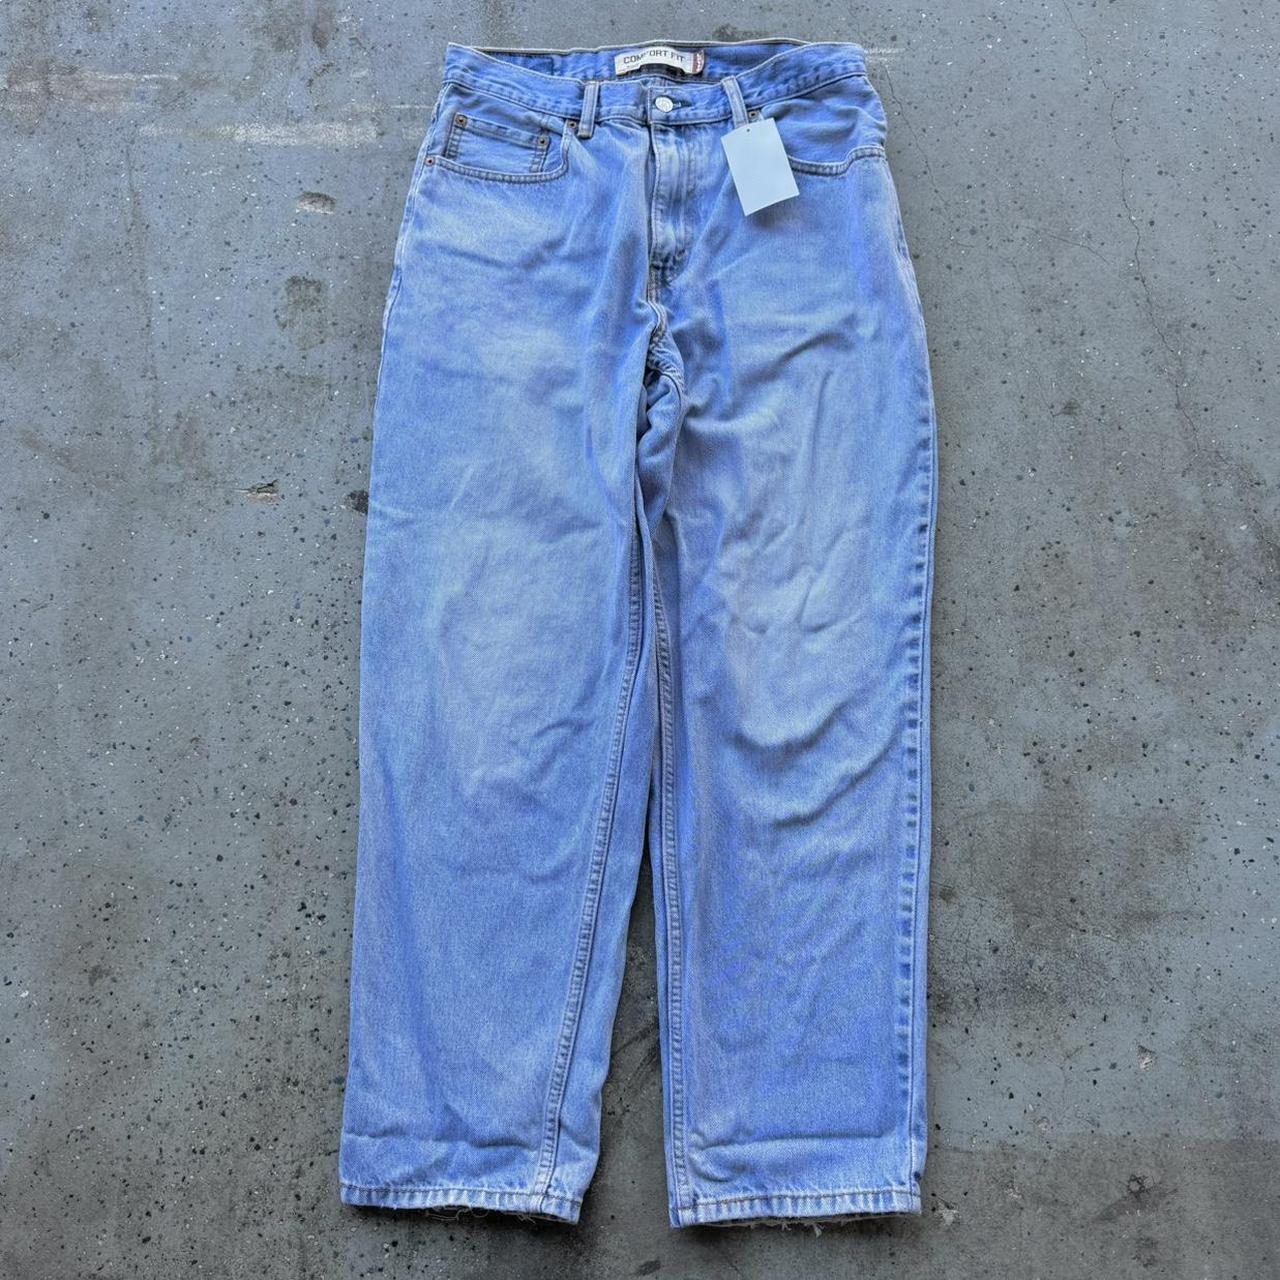 560 levi’s jeans baggy blue denim 32x30 #560levis... - Depop